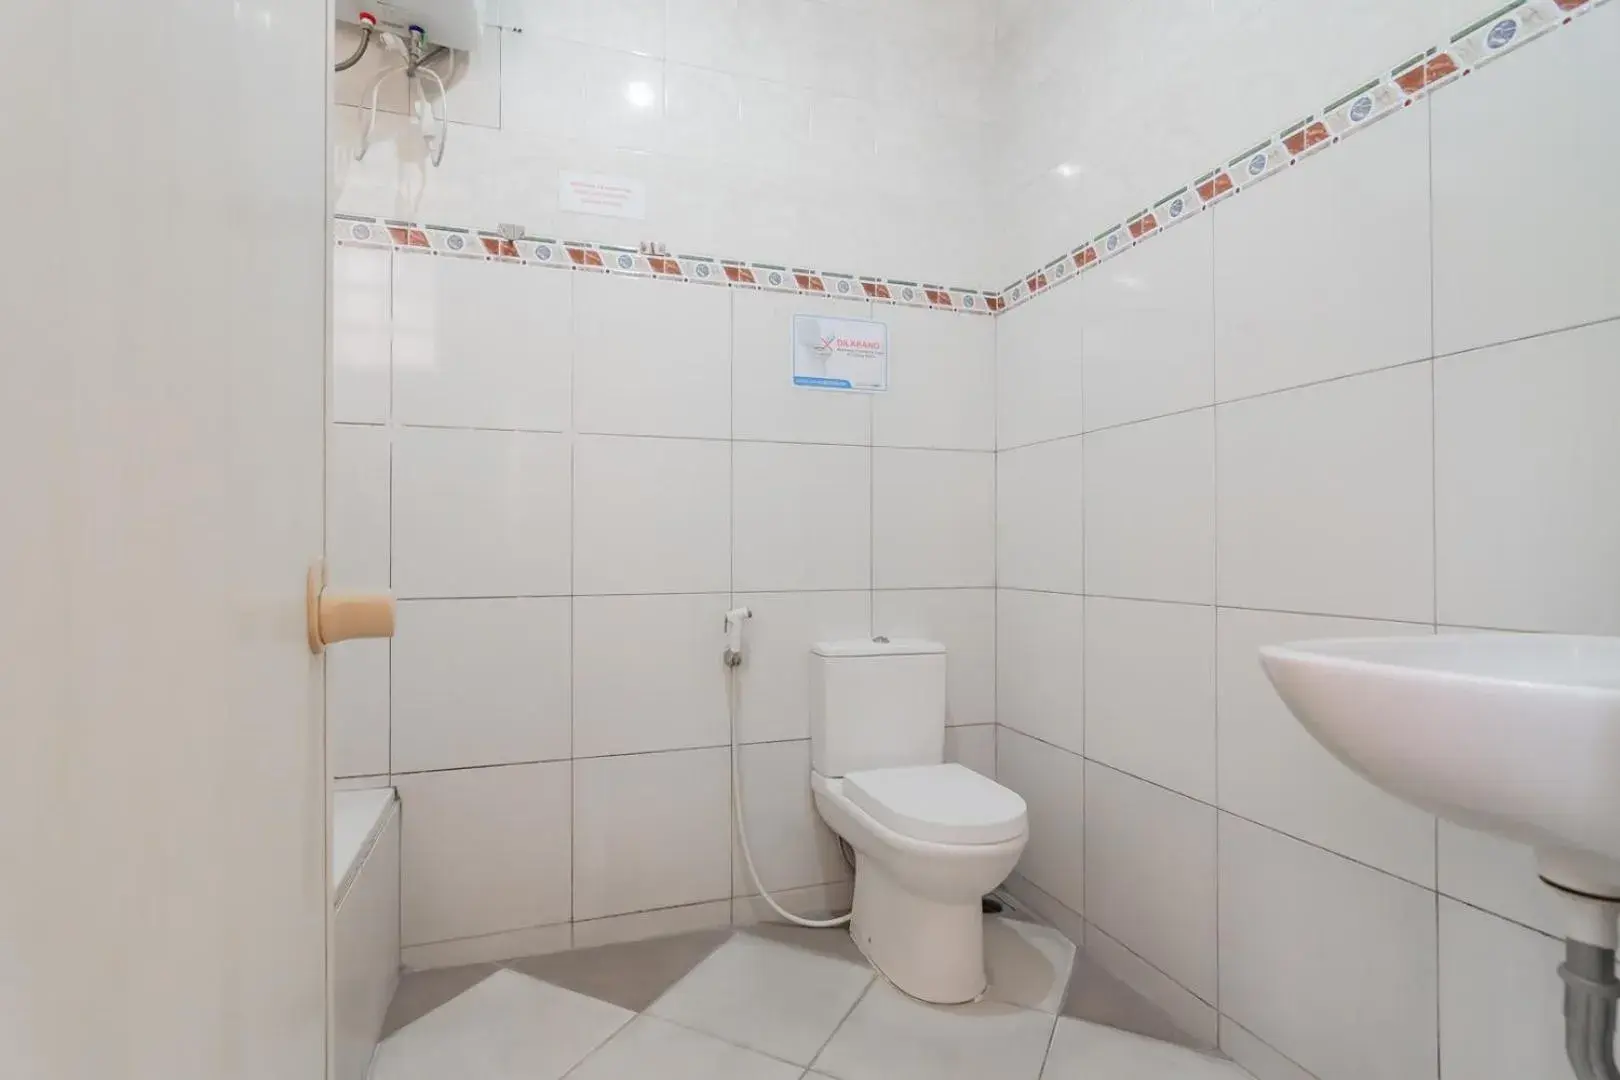 Bathroom in Rossan Villa Hotel near Sersan Bajuri RedPartner